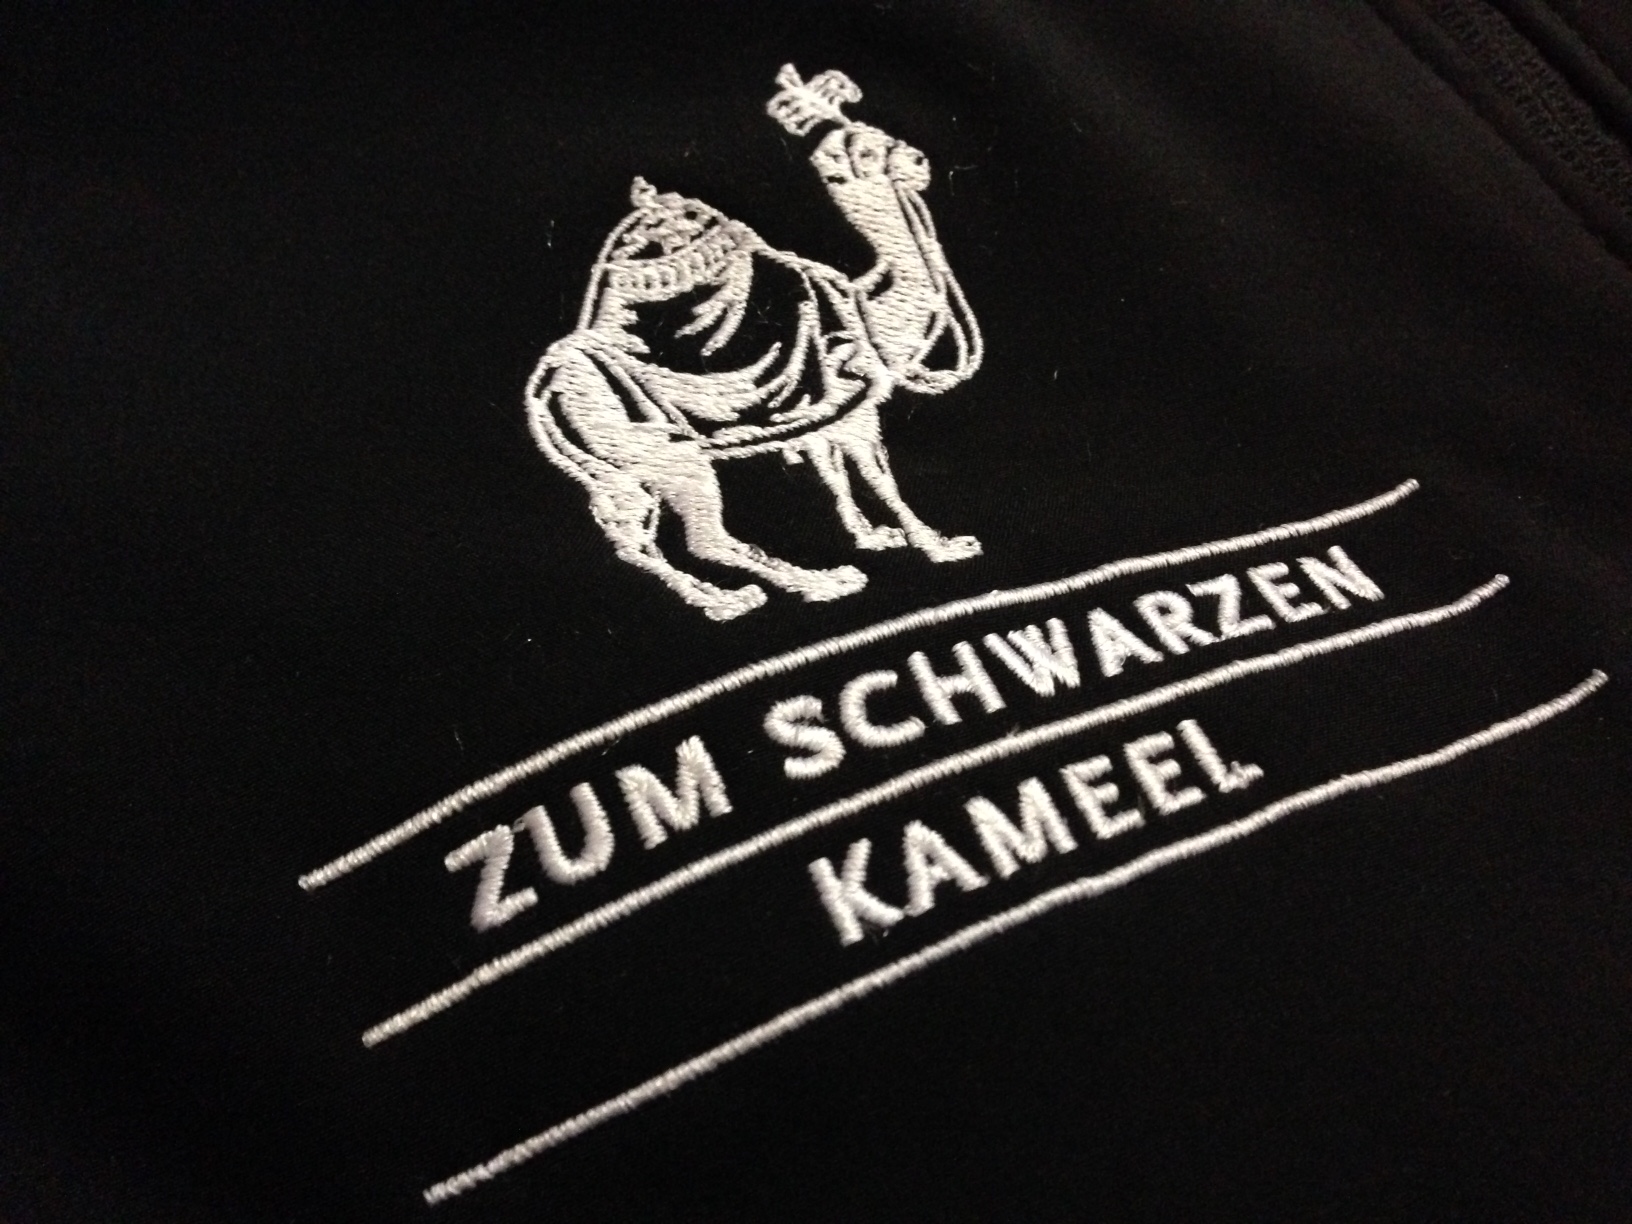 schwarze-kameel-logo